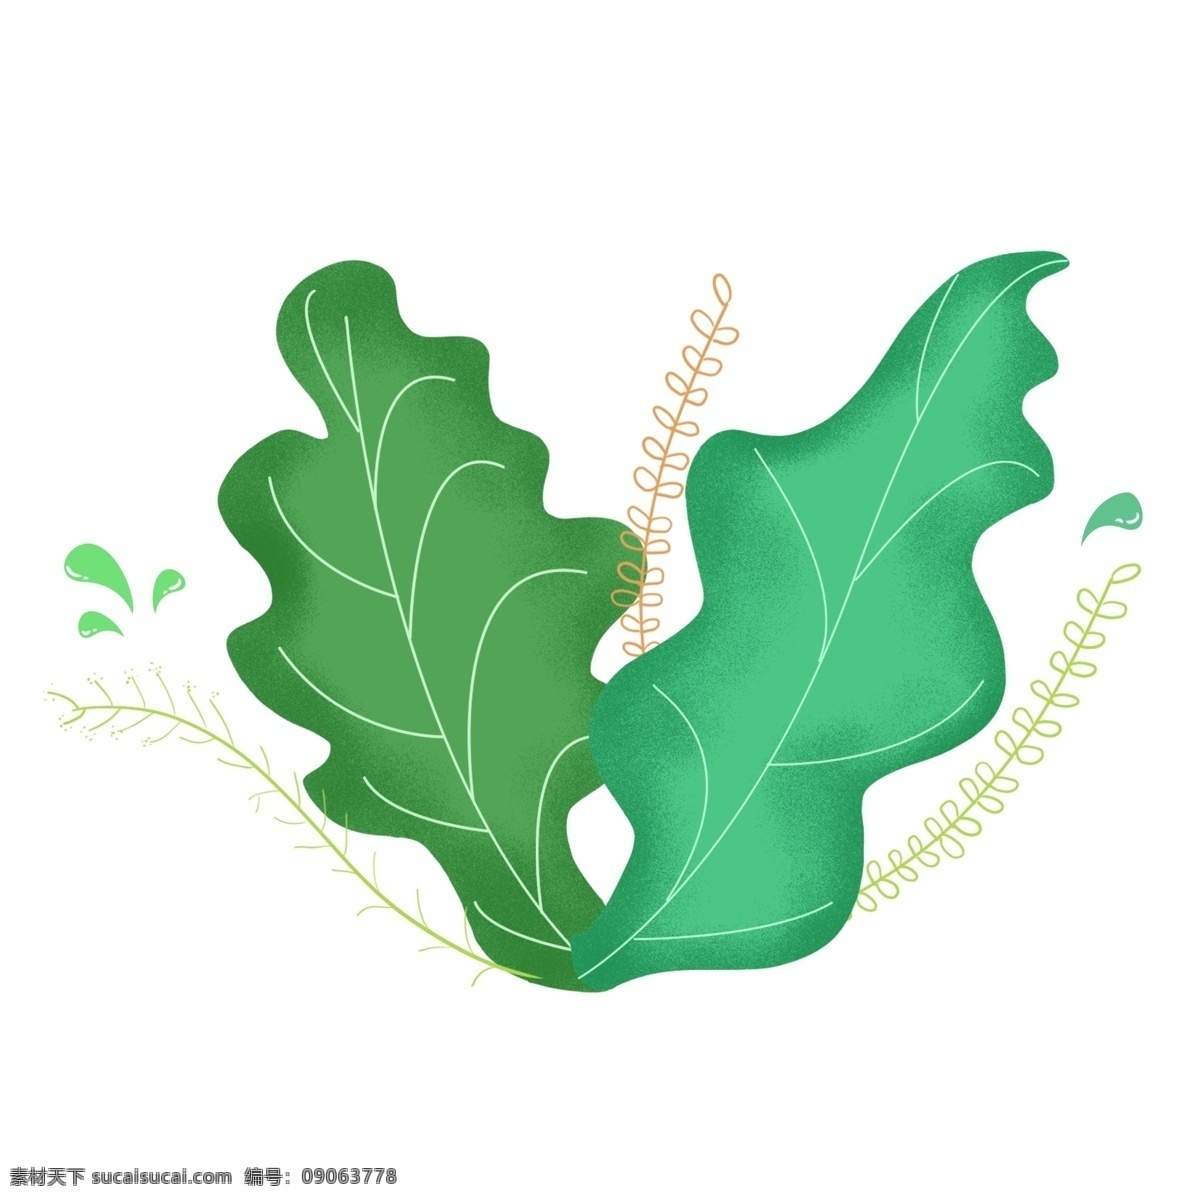 手绘 绿色 水滴 植物 叶子 装饰 图案 元素 商用 手绘植物 绿色植物 绿色叶子 绿叶 手绘叶子